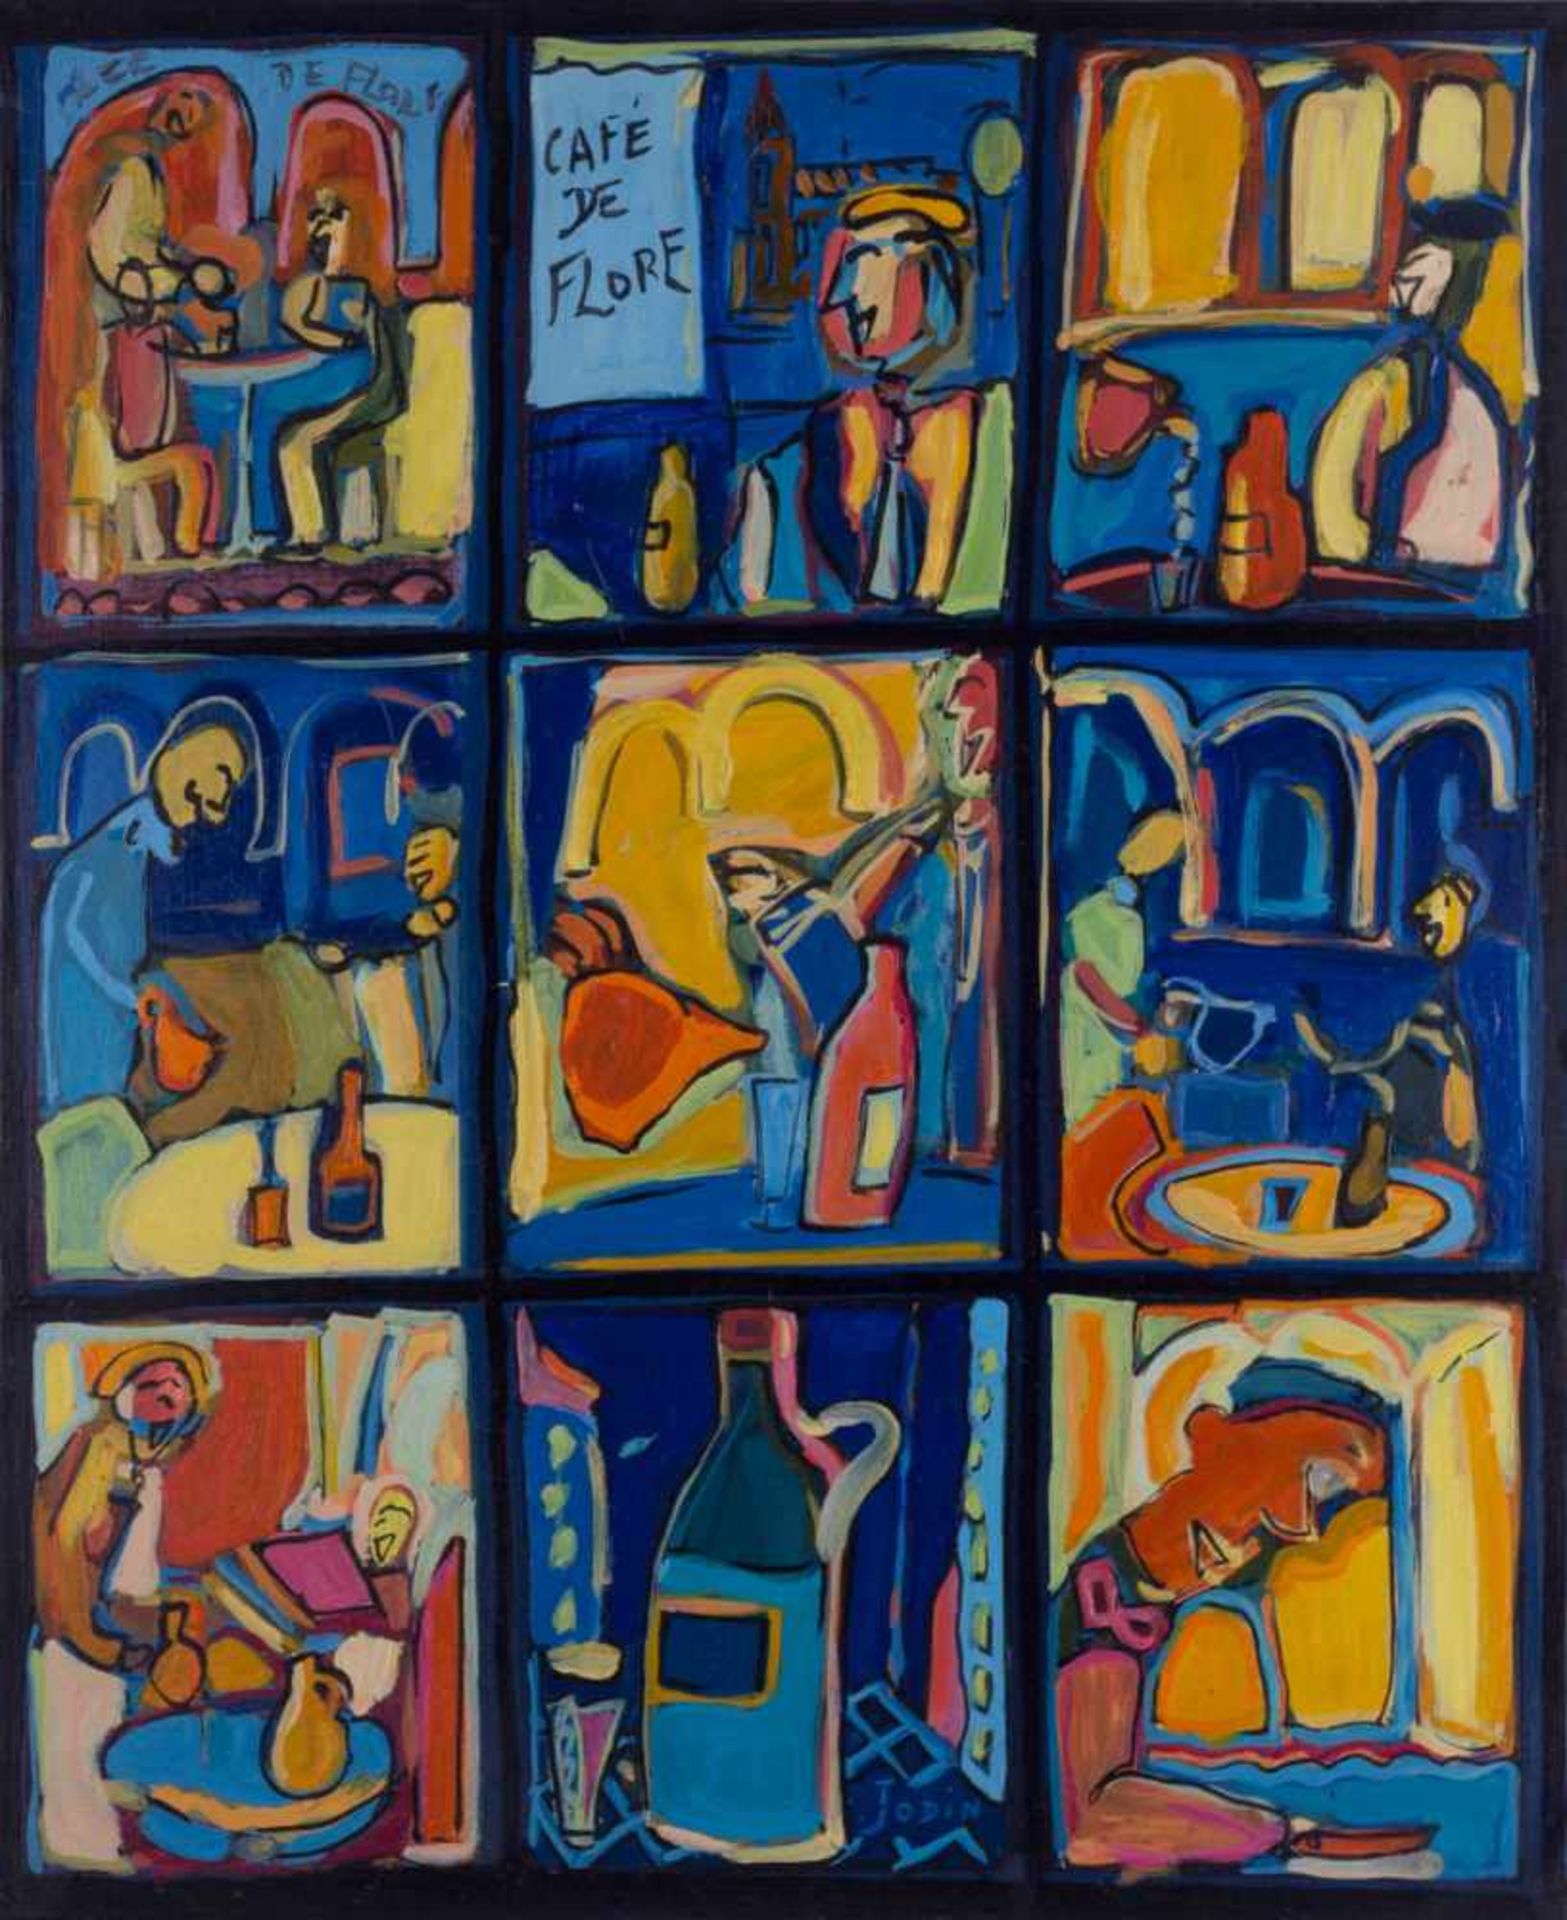 Christian JODIN (1968) "Le Cafe de Flore, Paris" Gemälde Öl/Leinwand, 73 cm x 60 cm, mittig unten